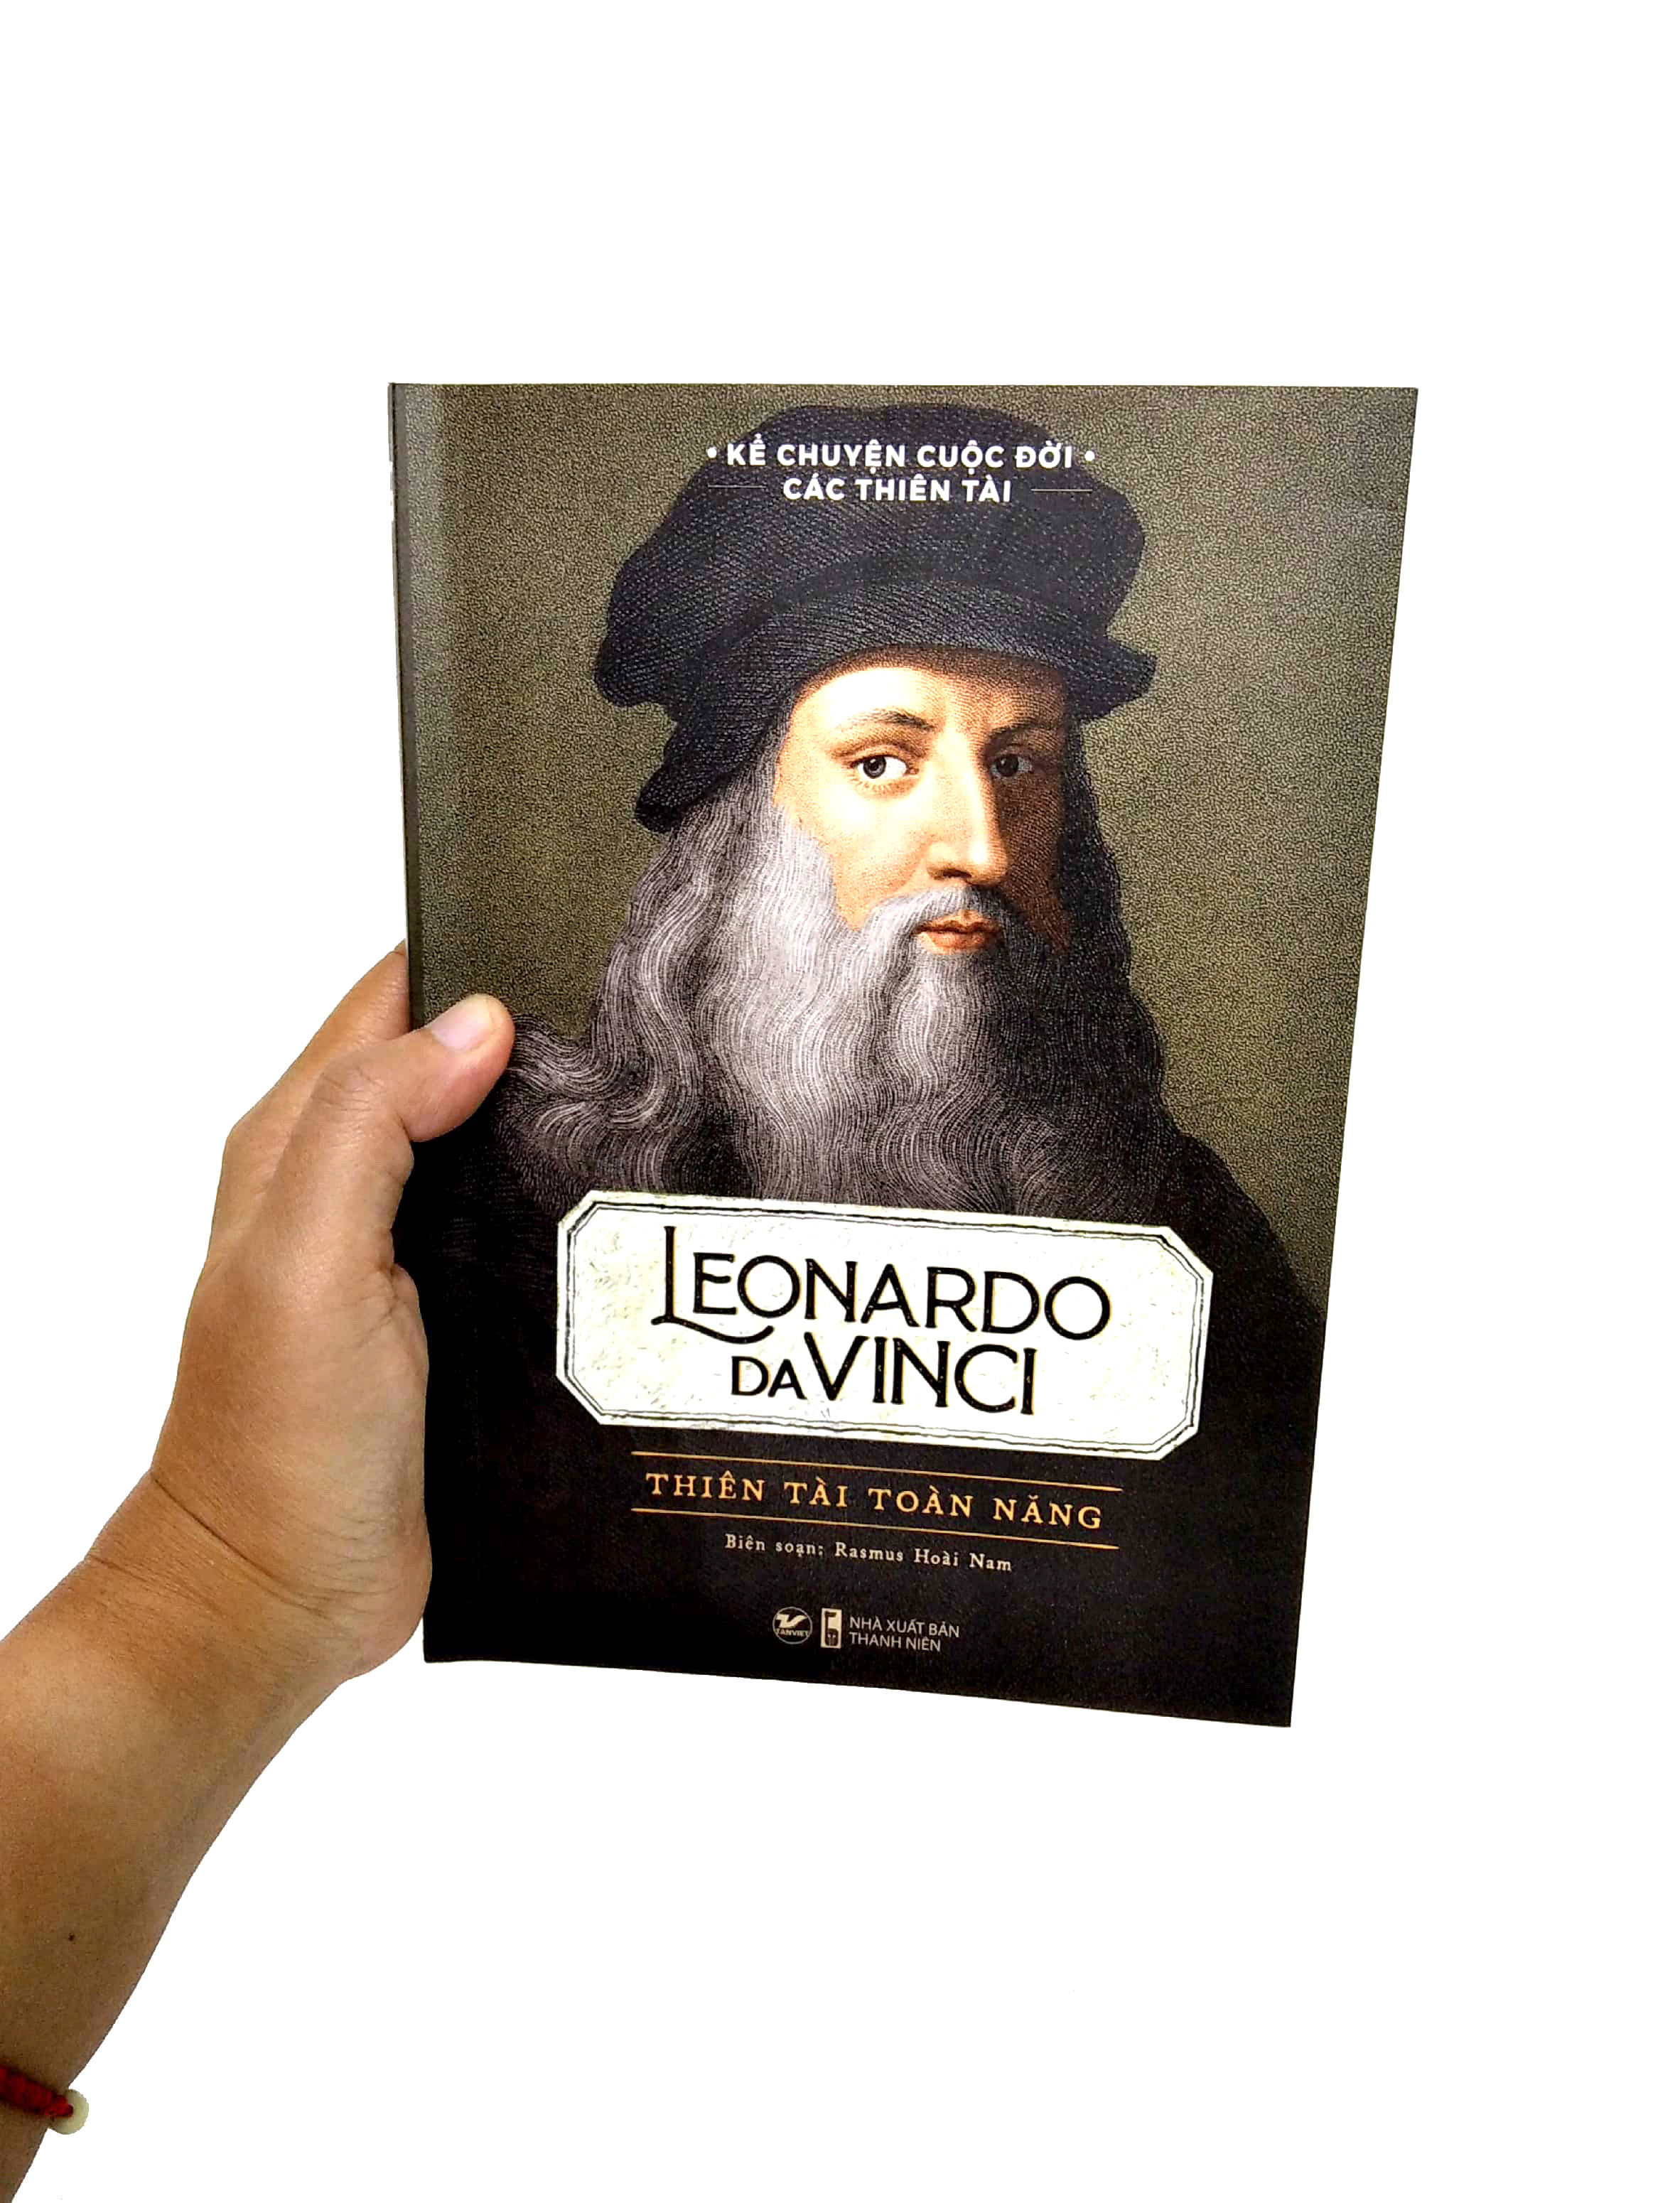 Kể Chuyện Cuộc Đời Các Thiên Tài: Leonardo Da Vinci - Thiên Tài Toàn Năng - Rasmus Hoài Nam - (bìa mềm)